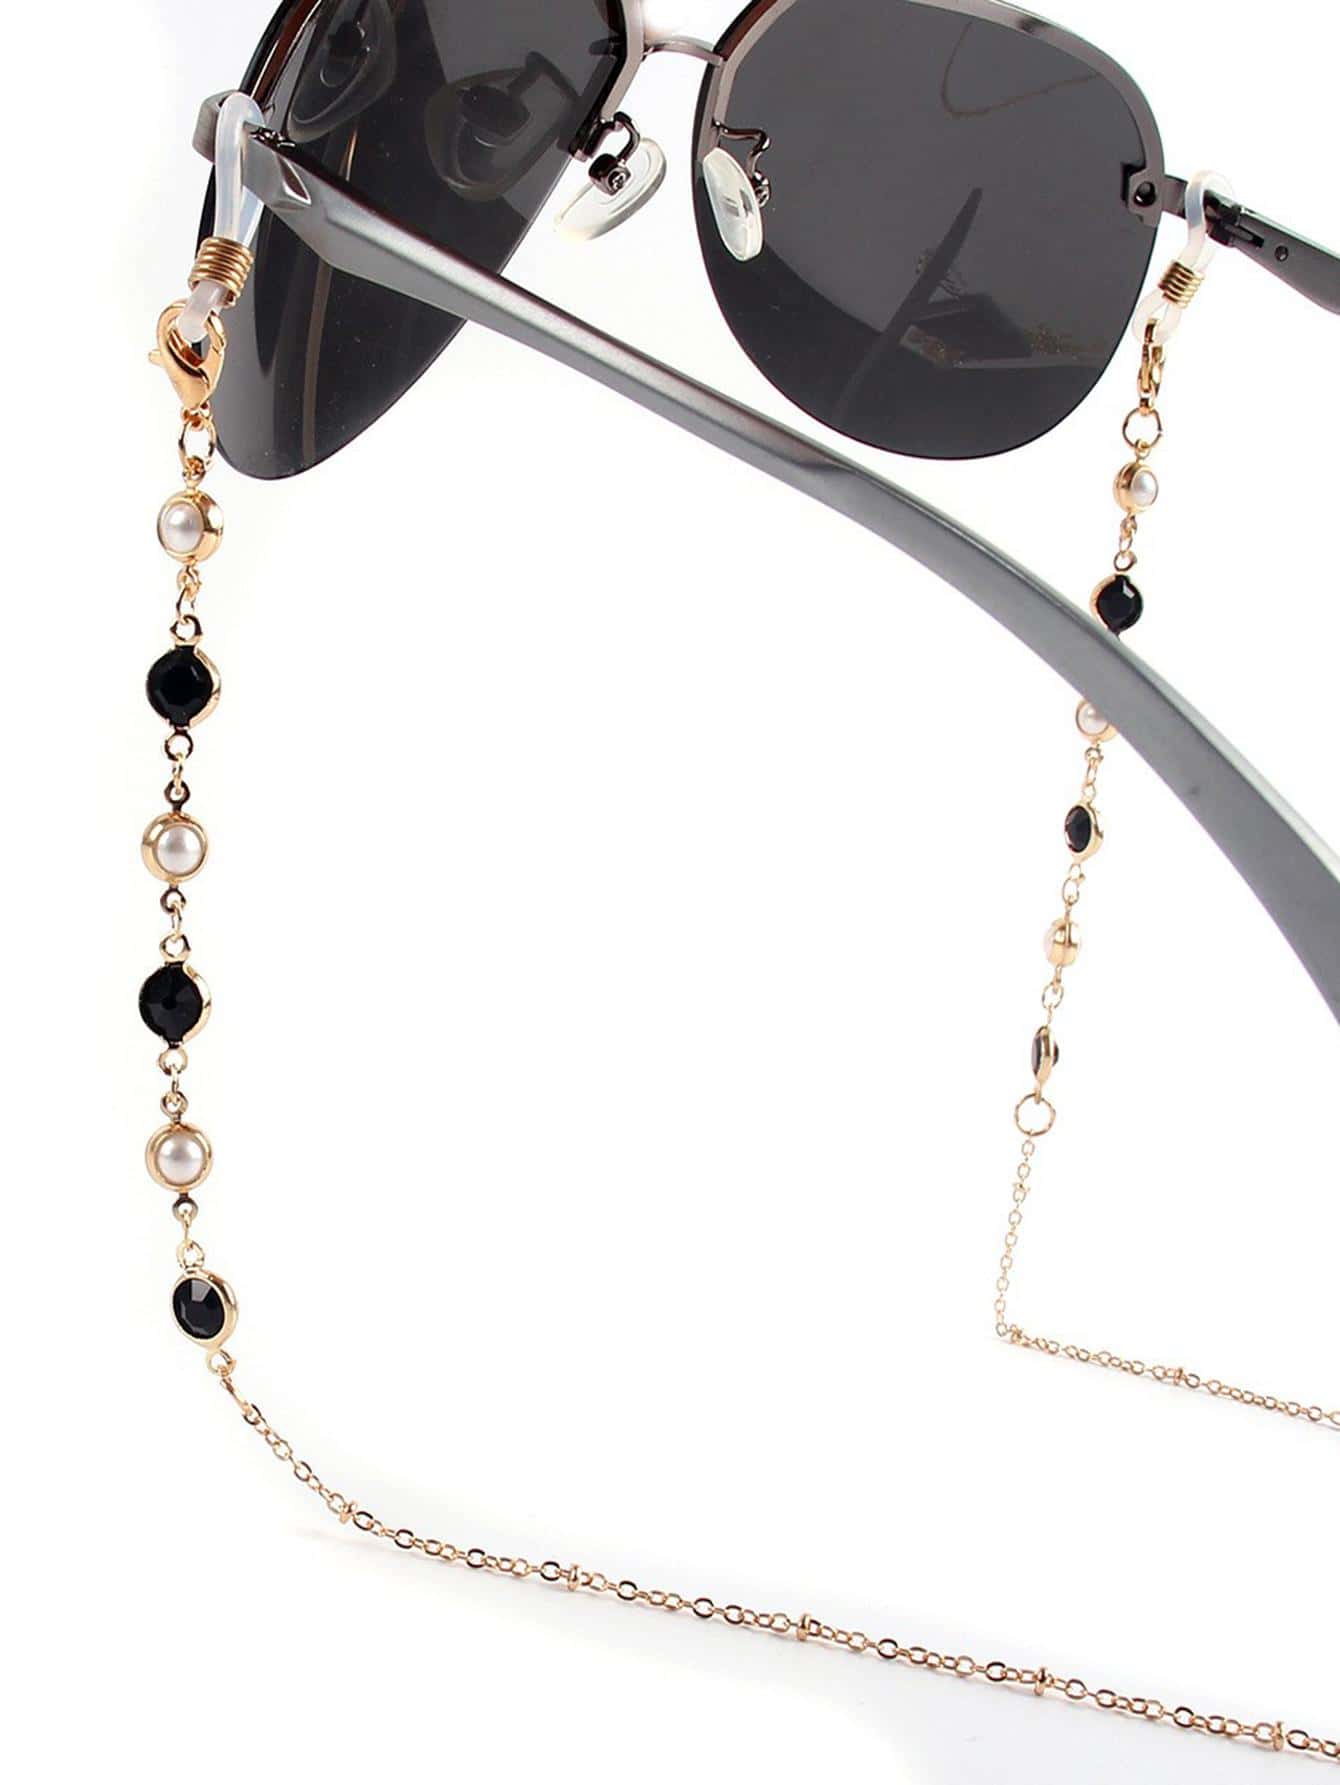 1шт женщин искусственный драгоценный камень жемчуг декор модные очки цепочка для украшения очков, золото мини статуэтка с искусственным драгоценным камнем 1 дюйм